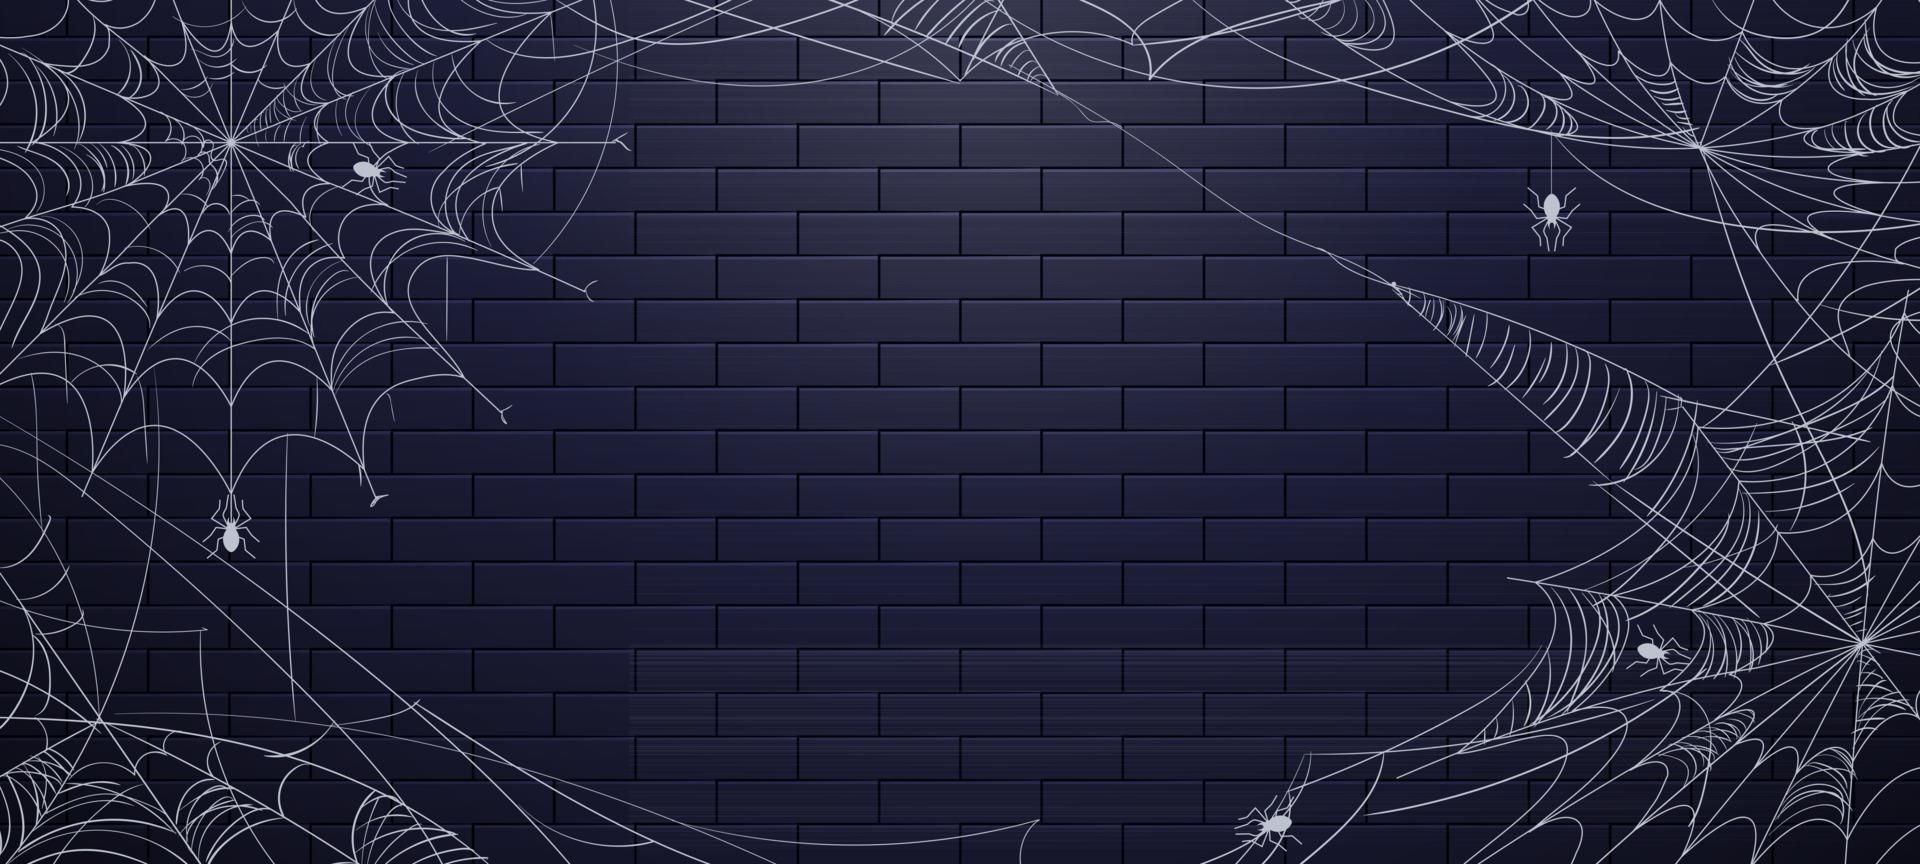 spinnenweb voor halloween-achtergrond vector